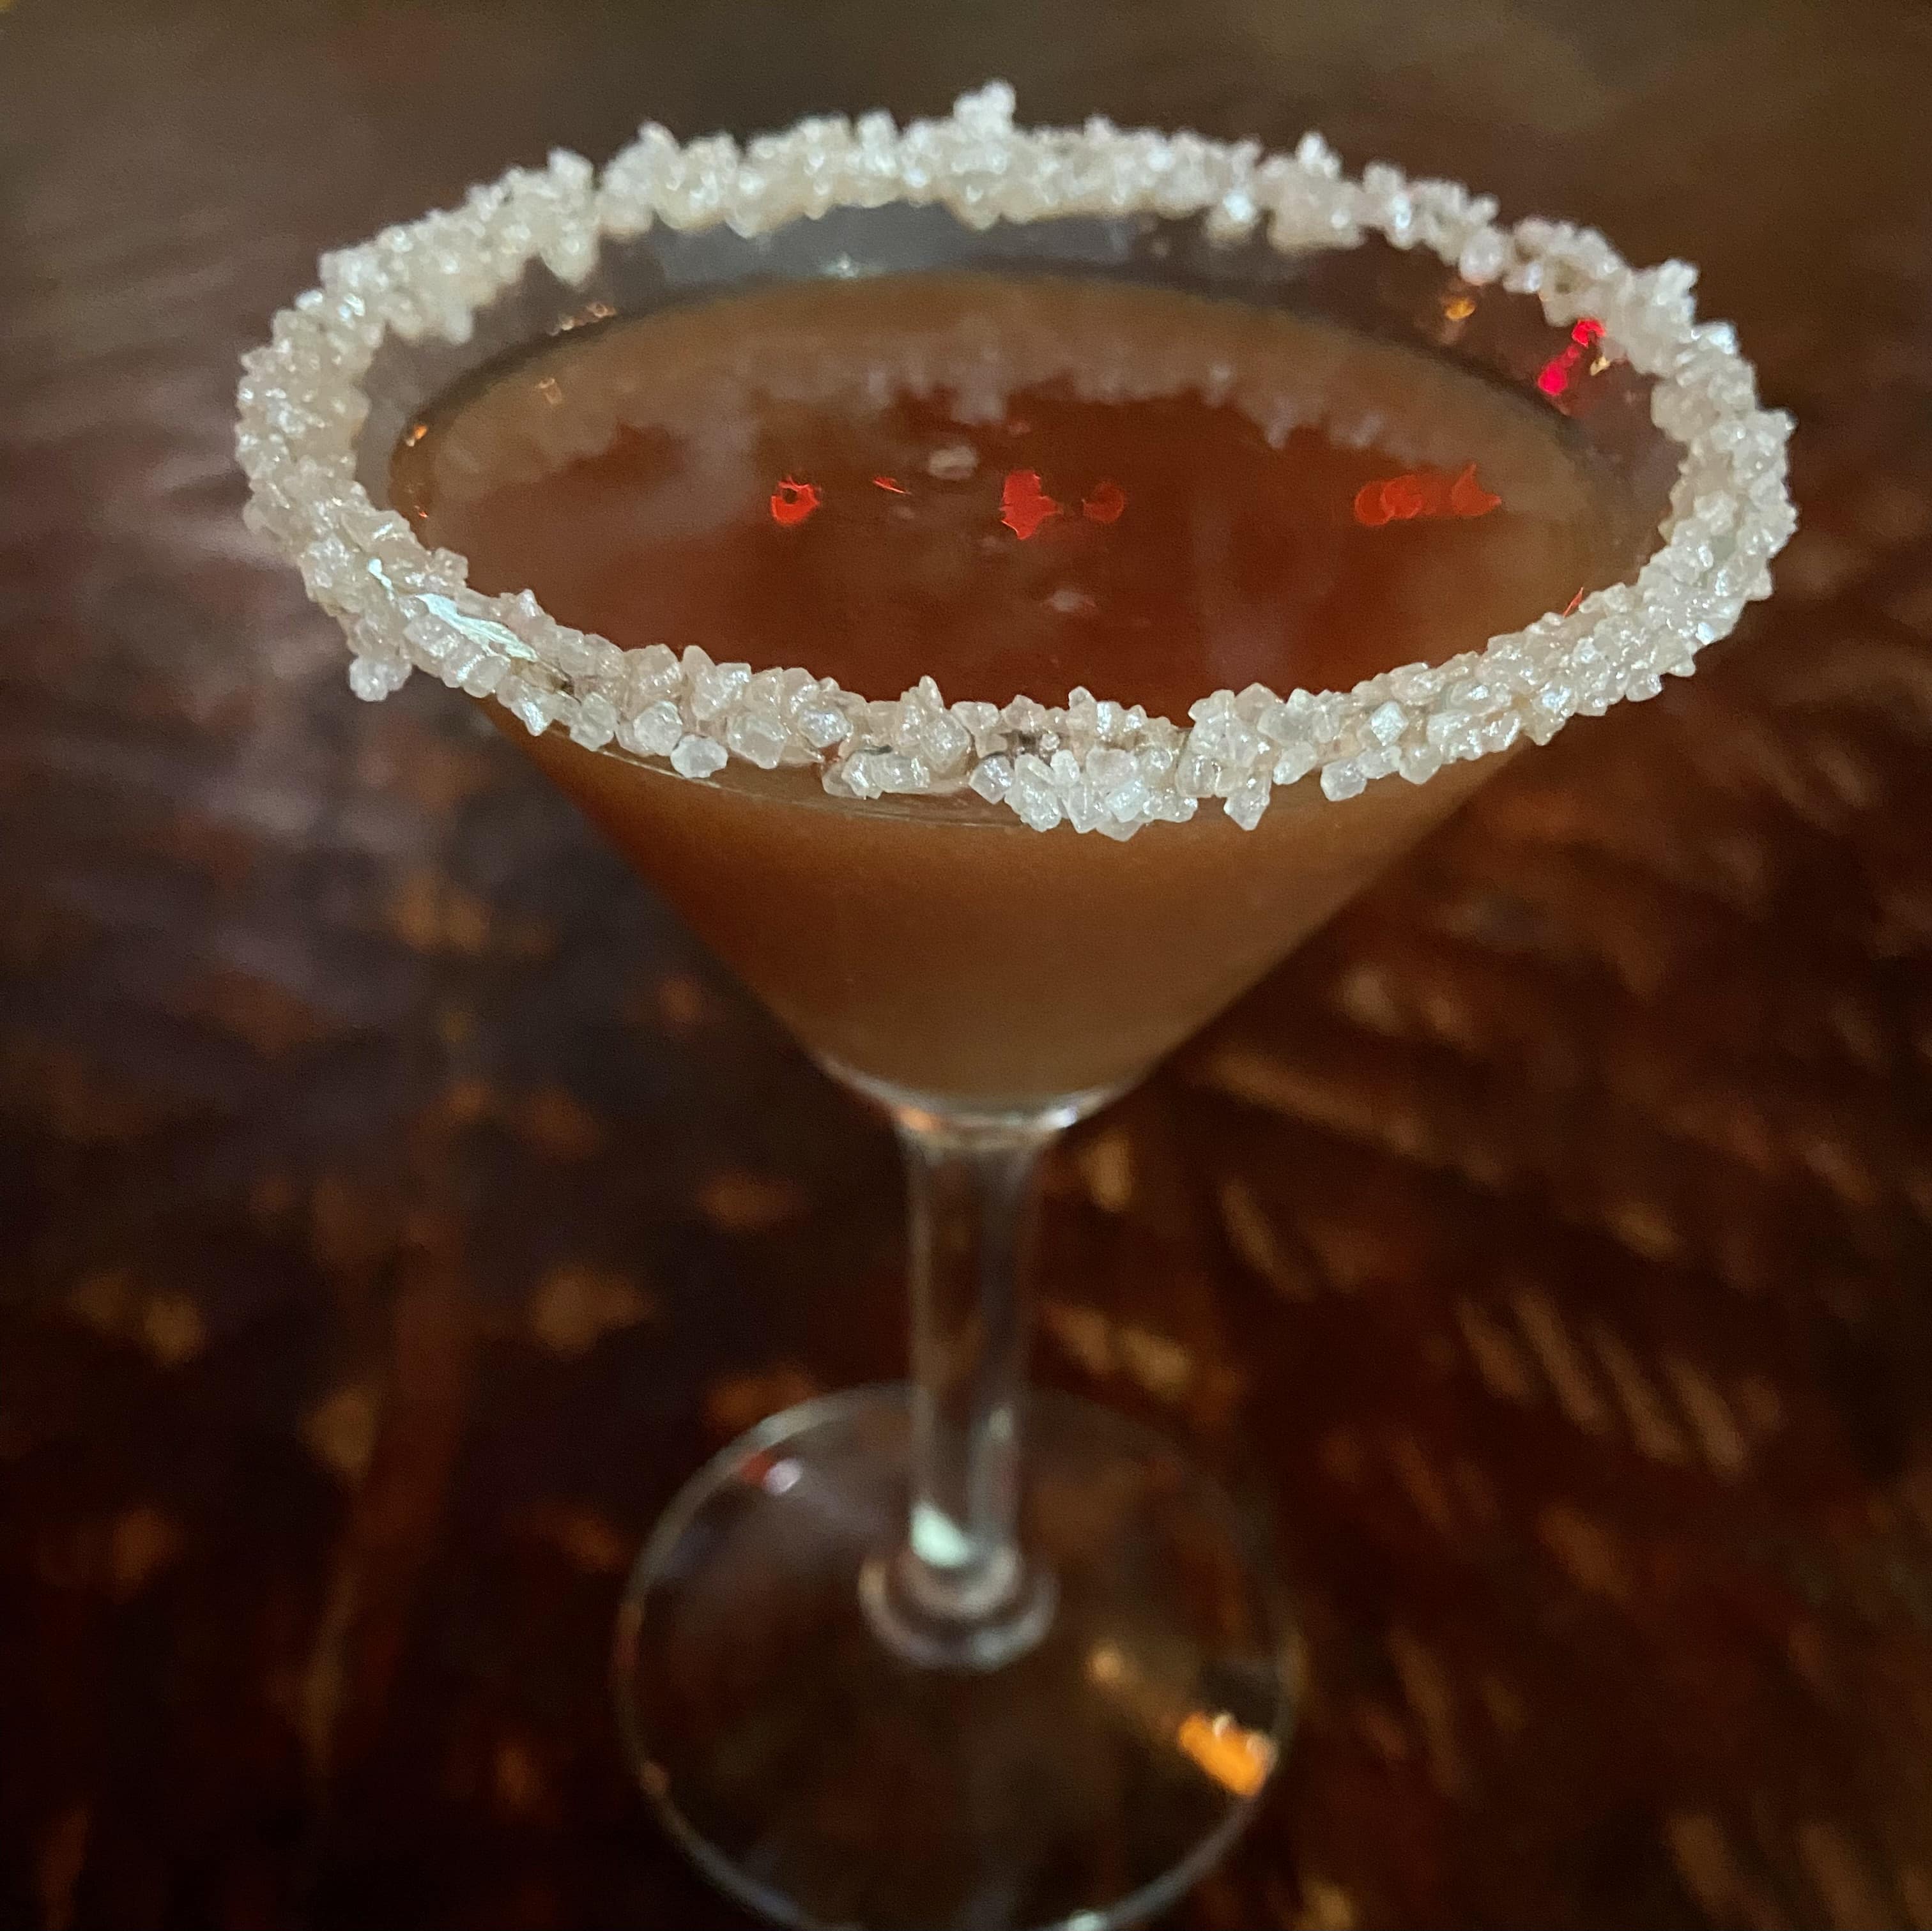 Coco-Choco Martini